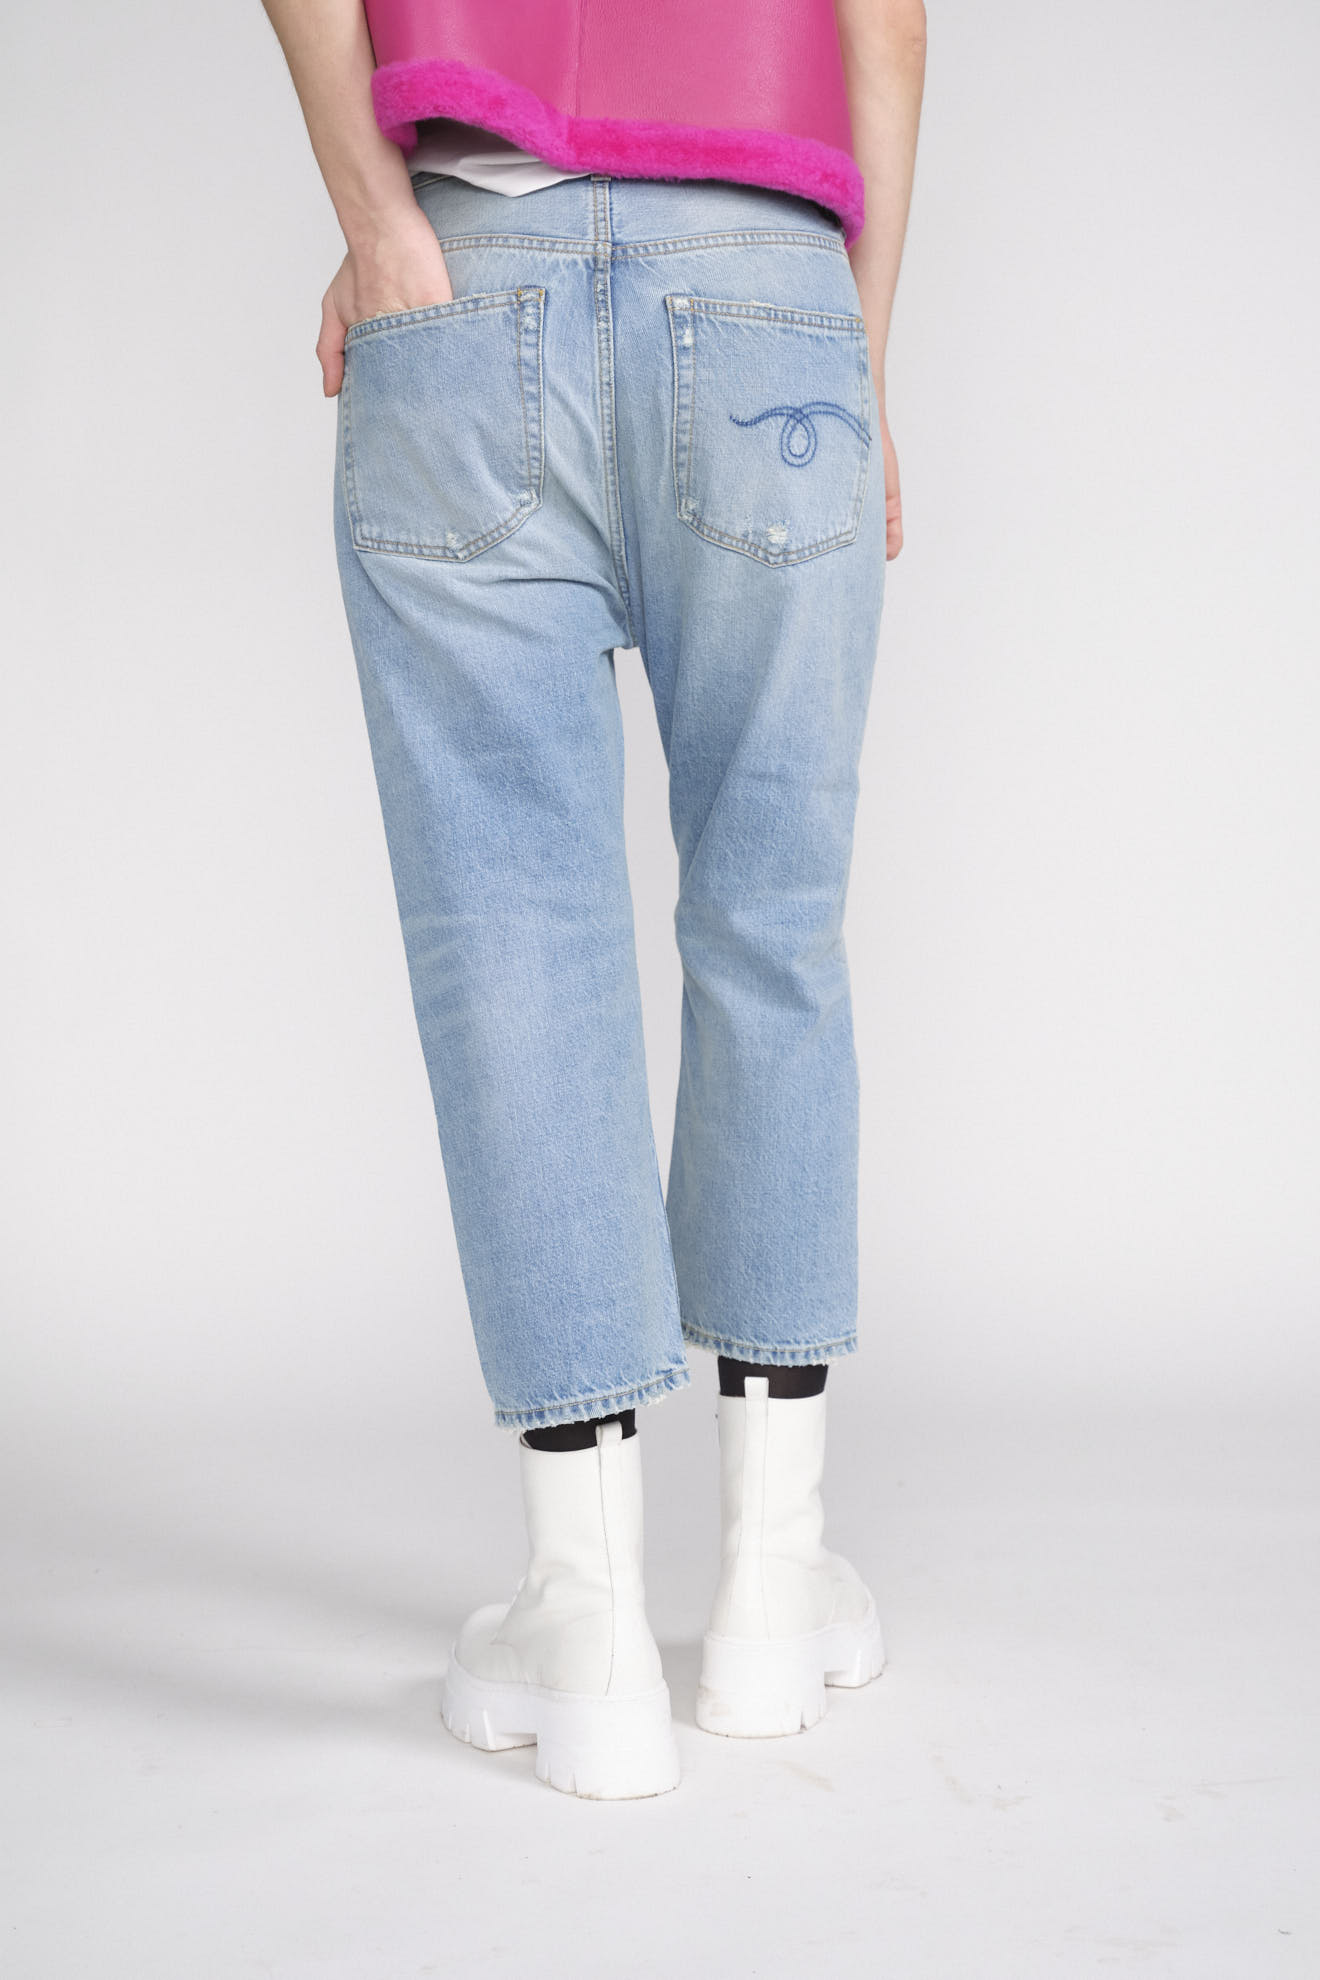 R13 Drop sartoriale - Jeans con cavallo basso blu 25